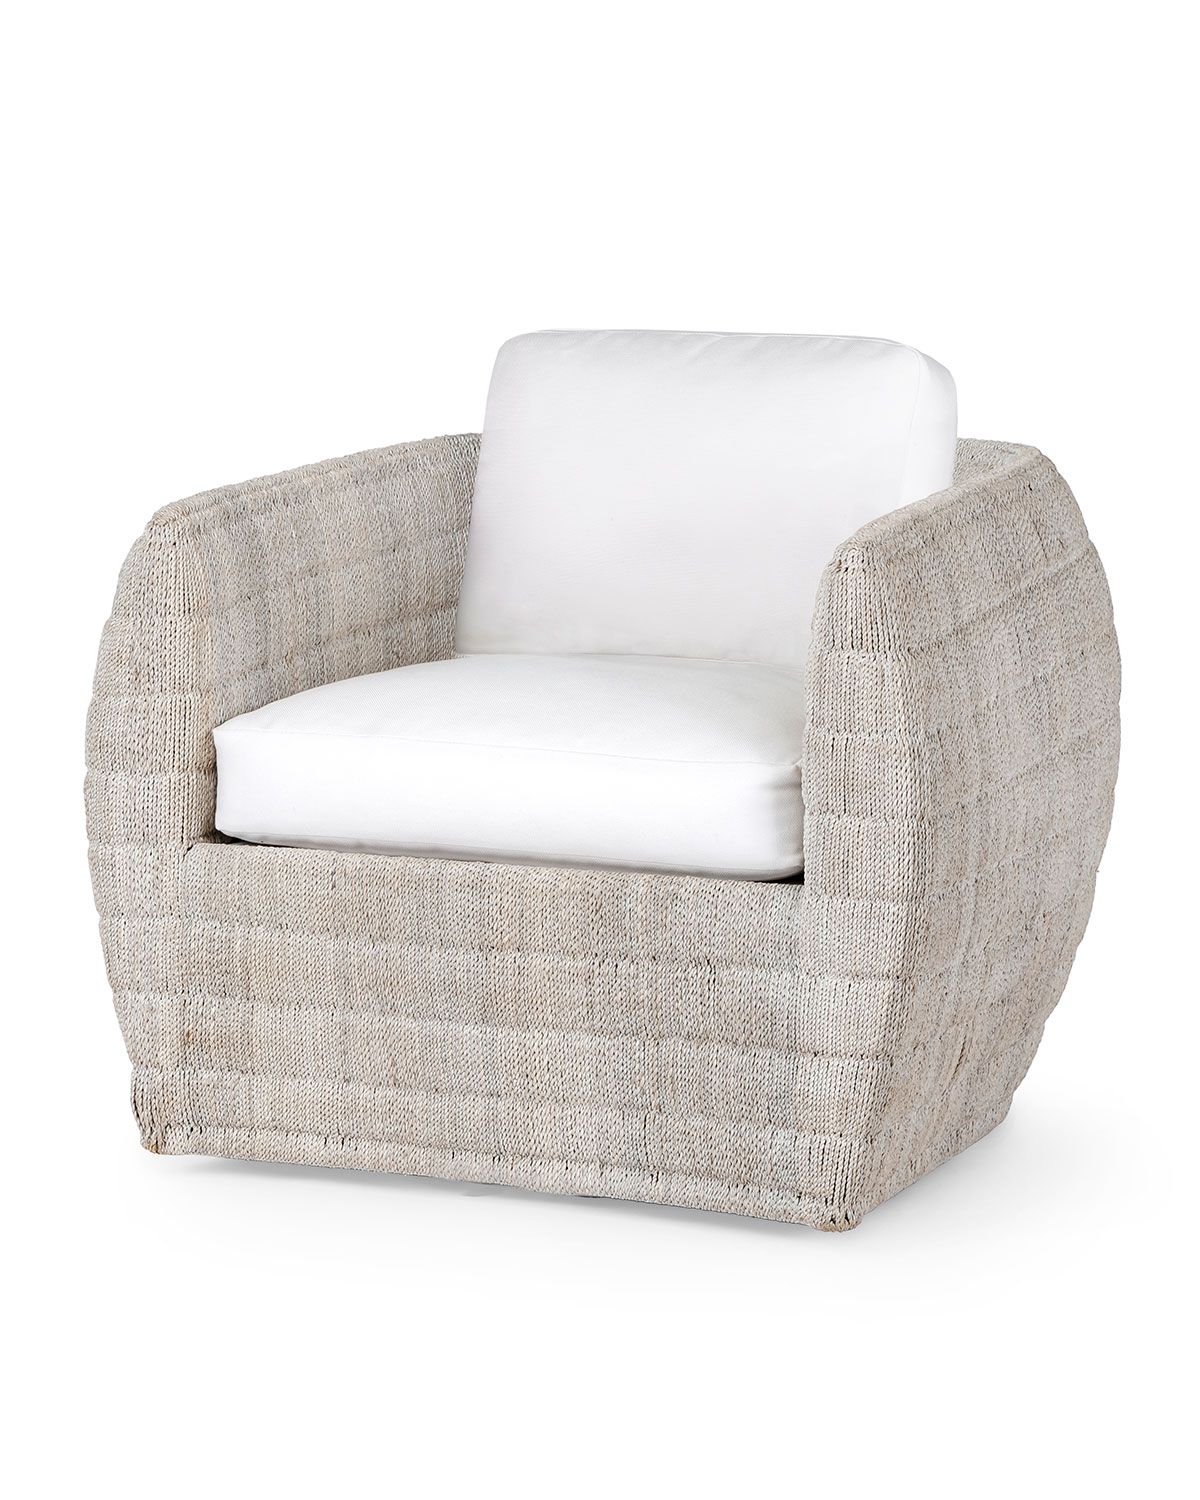 Ventura Swivel Lounge Chair, White Wash | Neiman Marcus